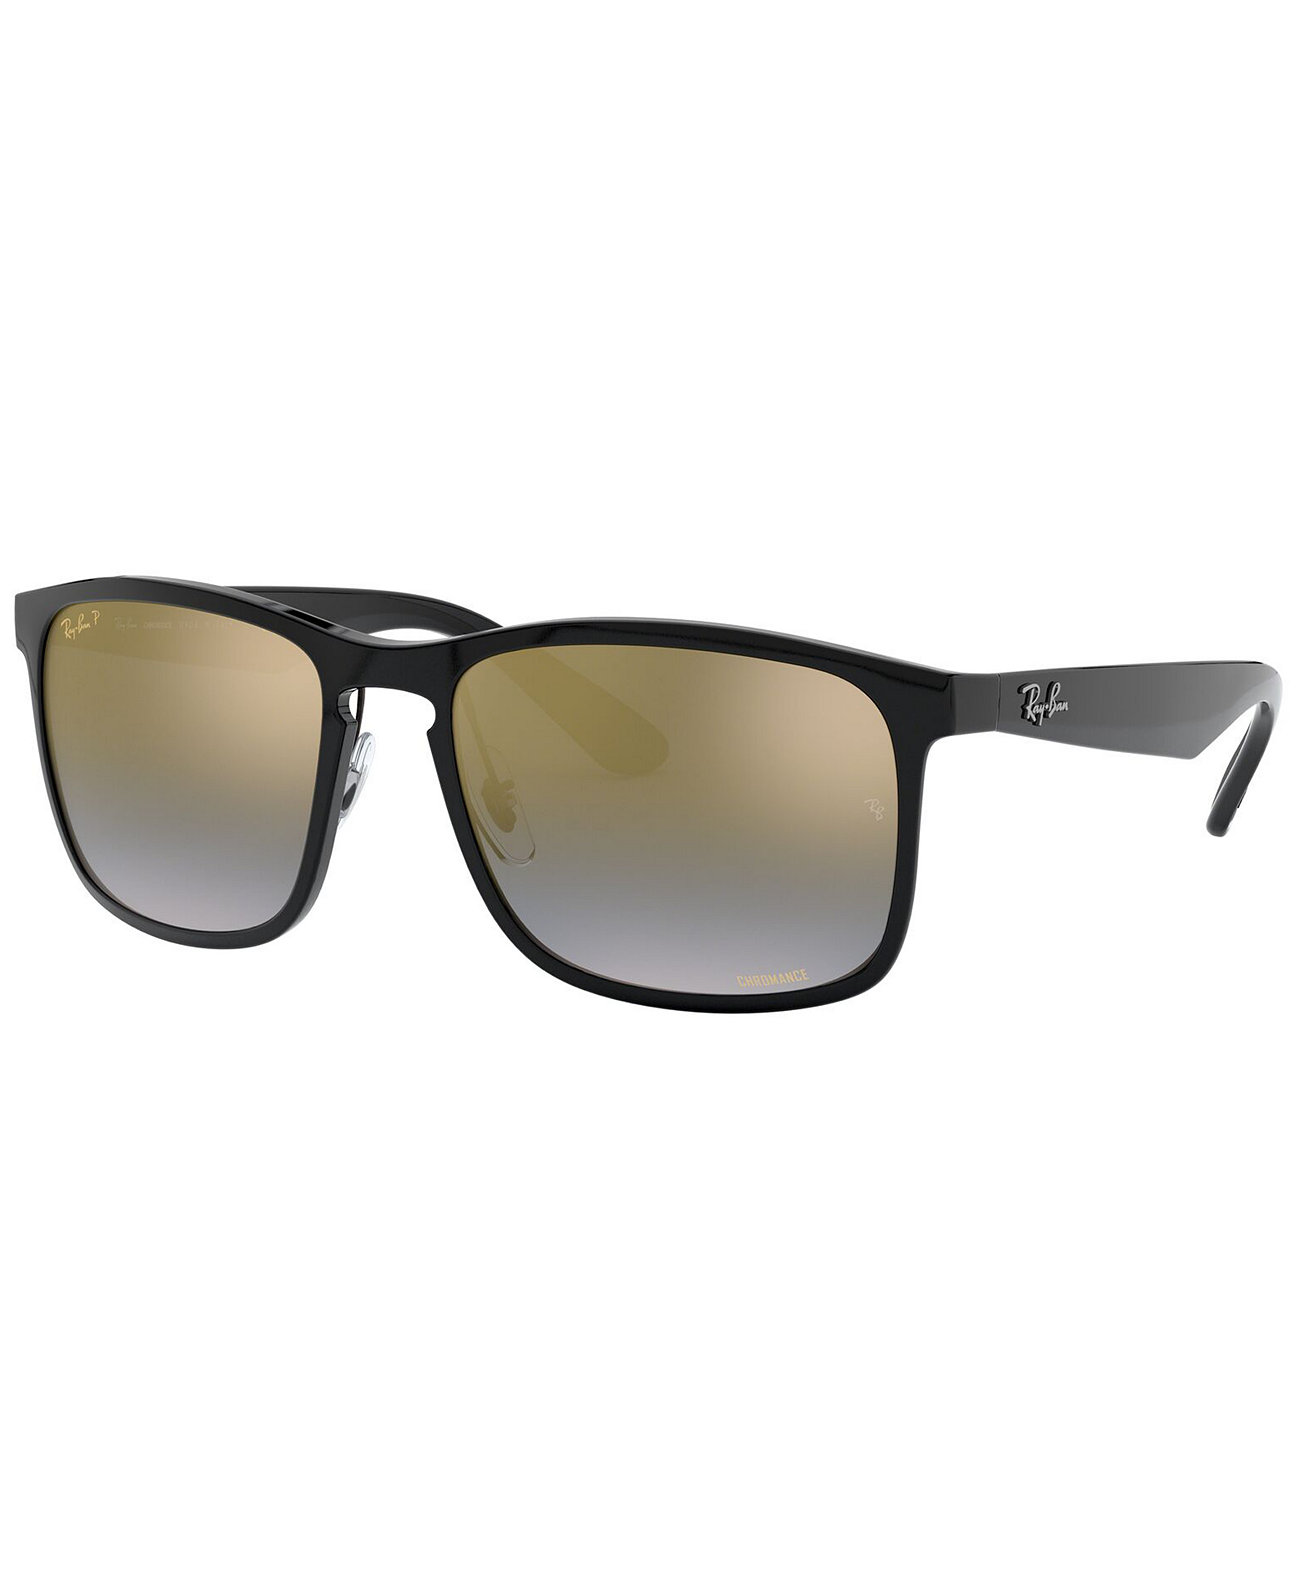 Поляризованные солнцезащитные очки, RB4264 58 Ray-Ban